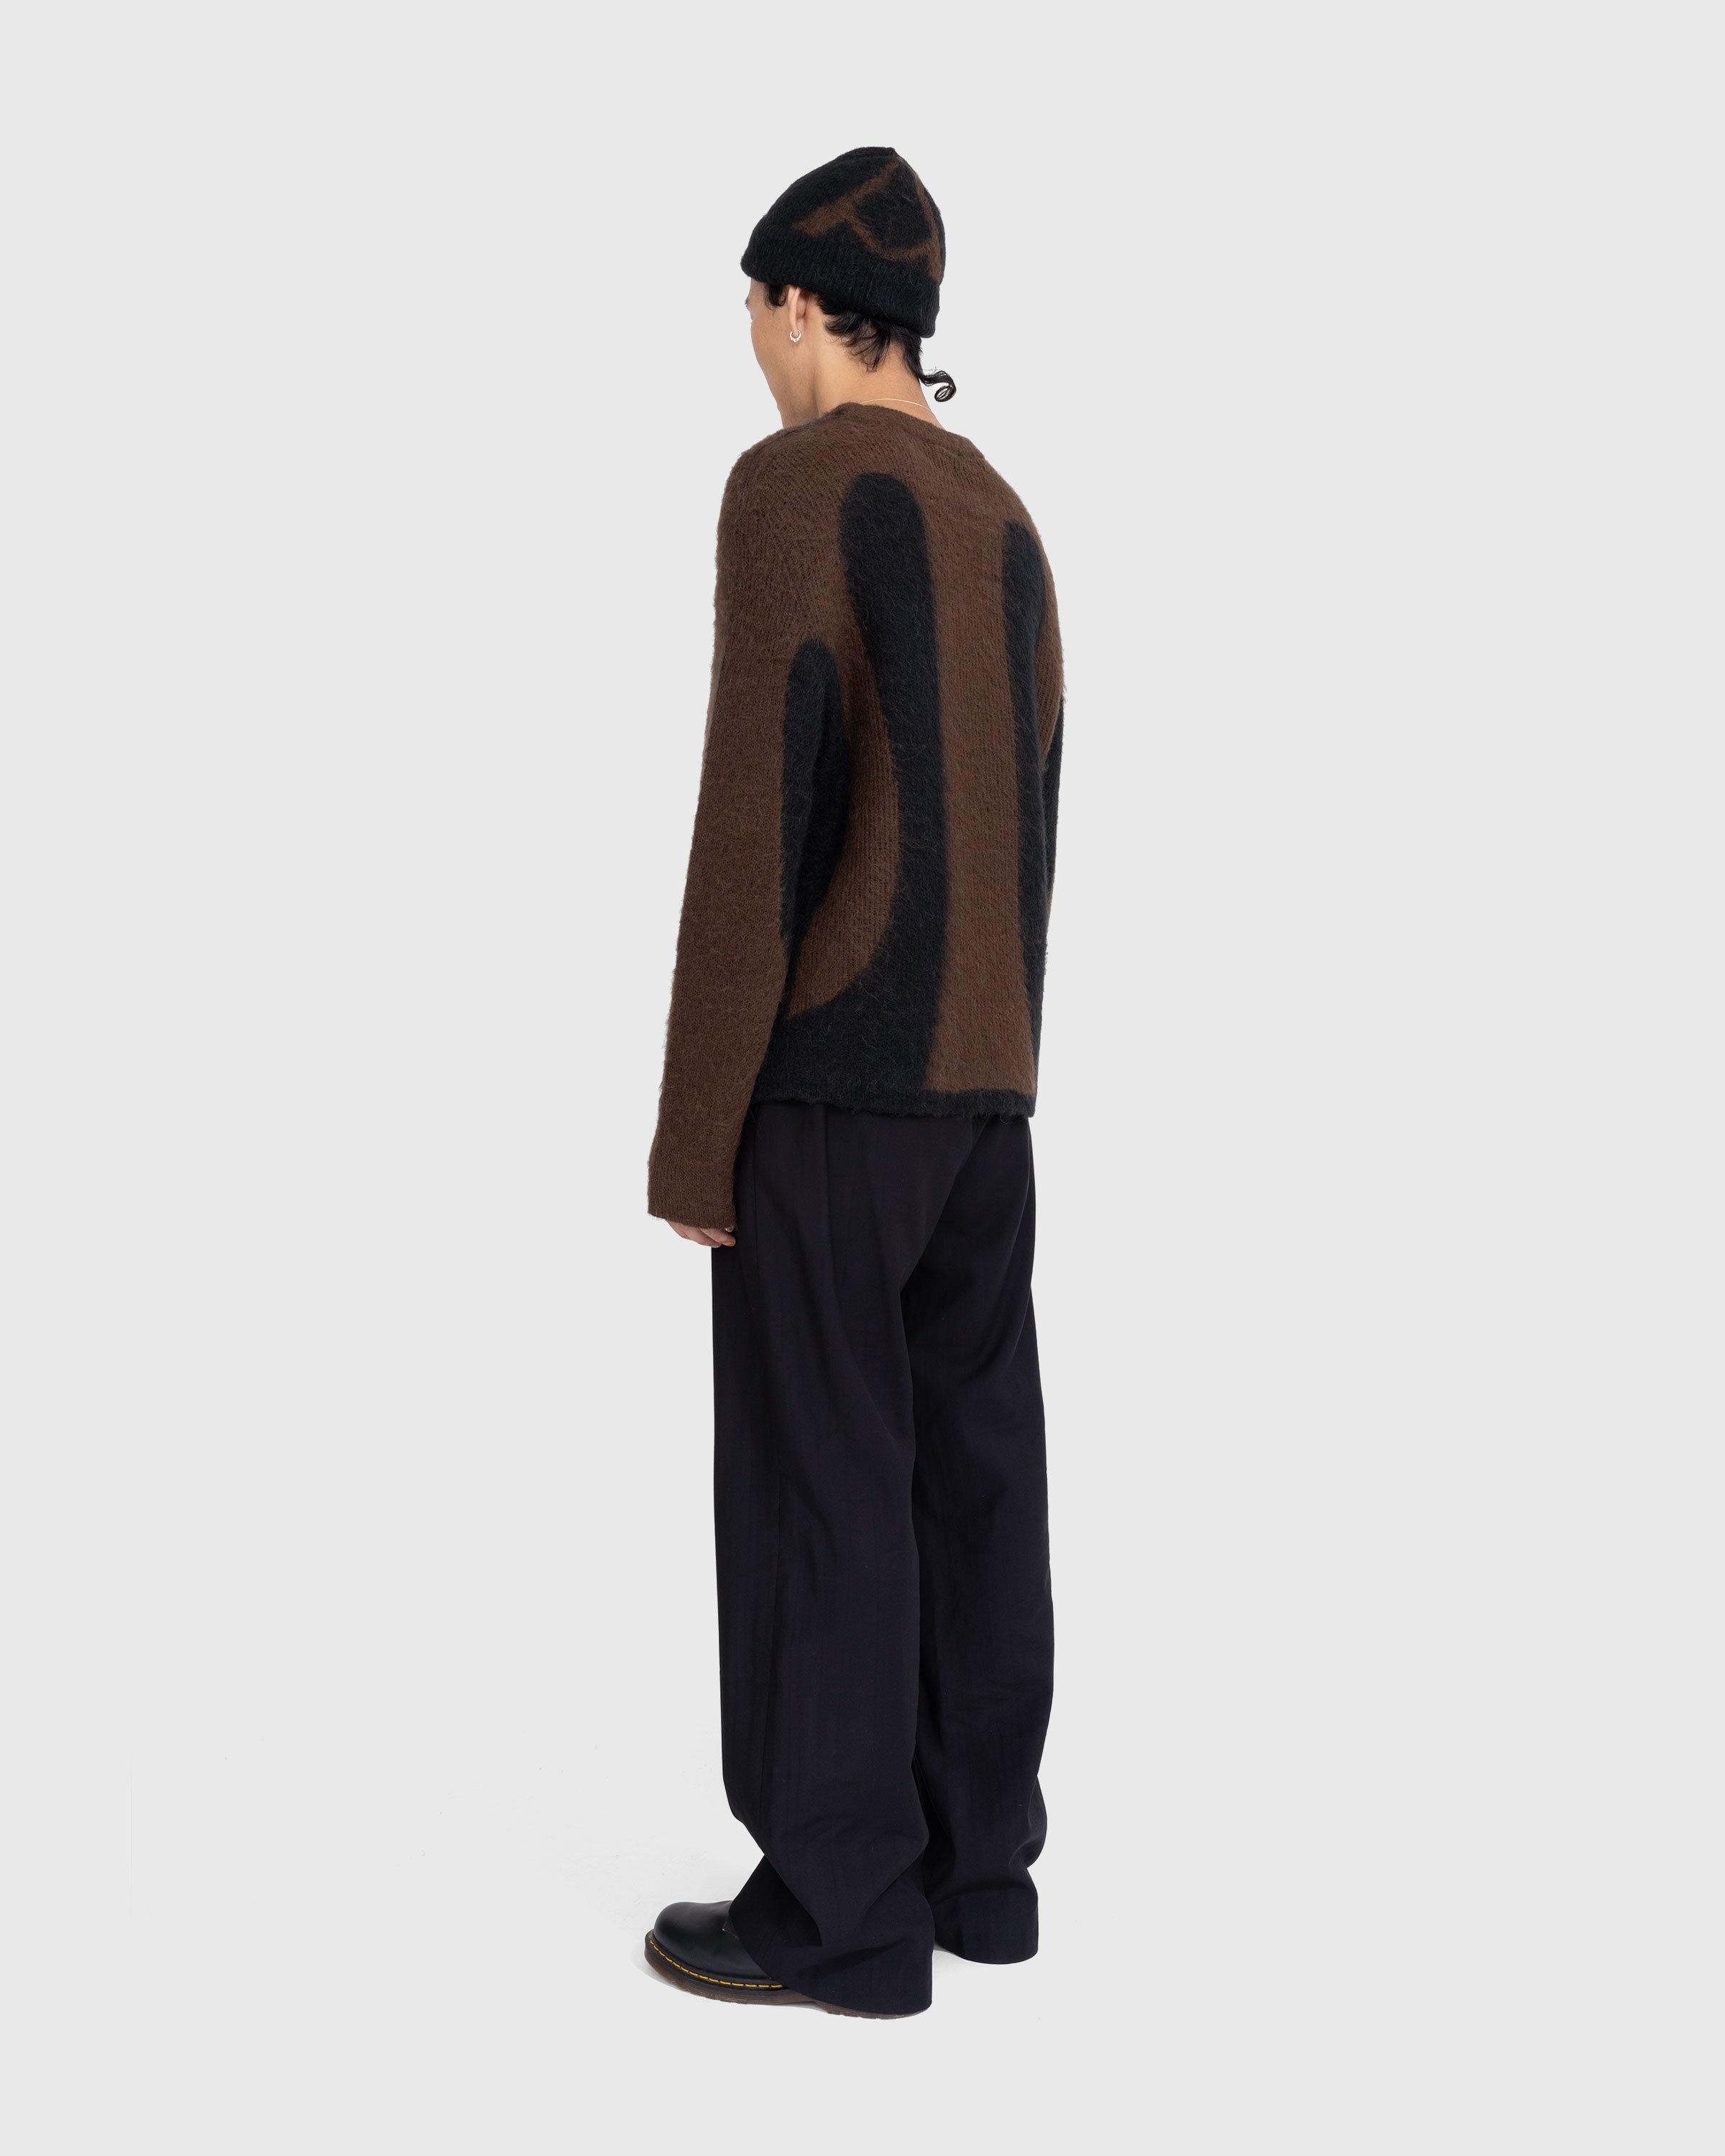 _J.L-A.L_ – Liquid Alpaca Sweater Black - Knitwear - Black - Image 4